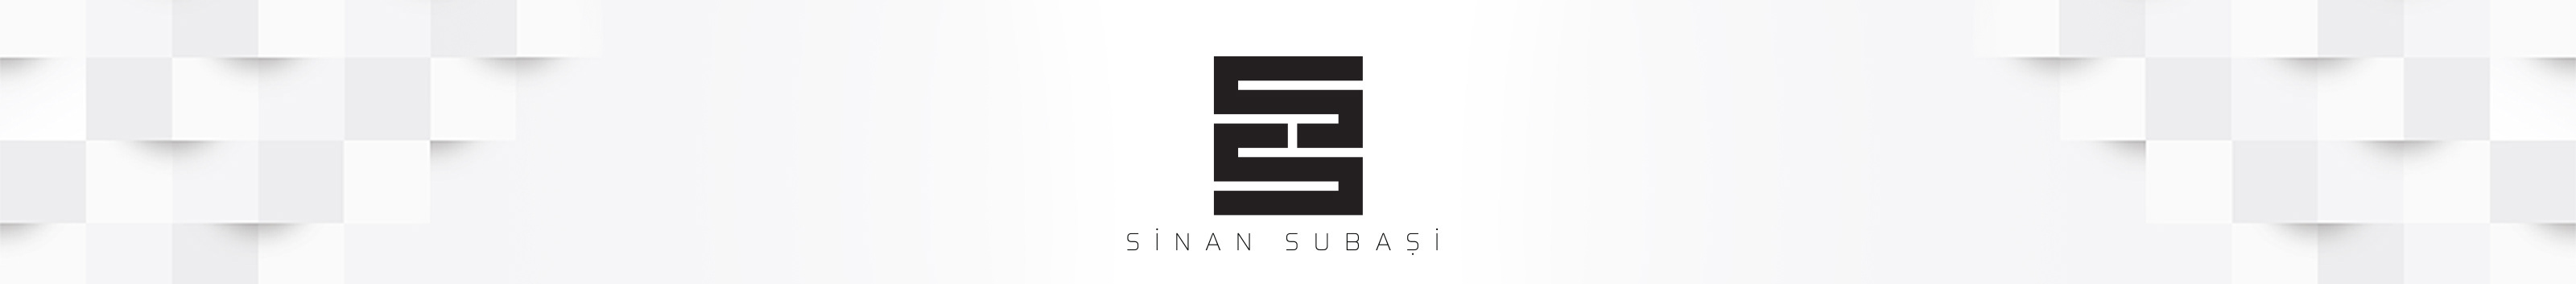 Sinan Subasi's profile banner